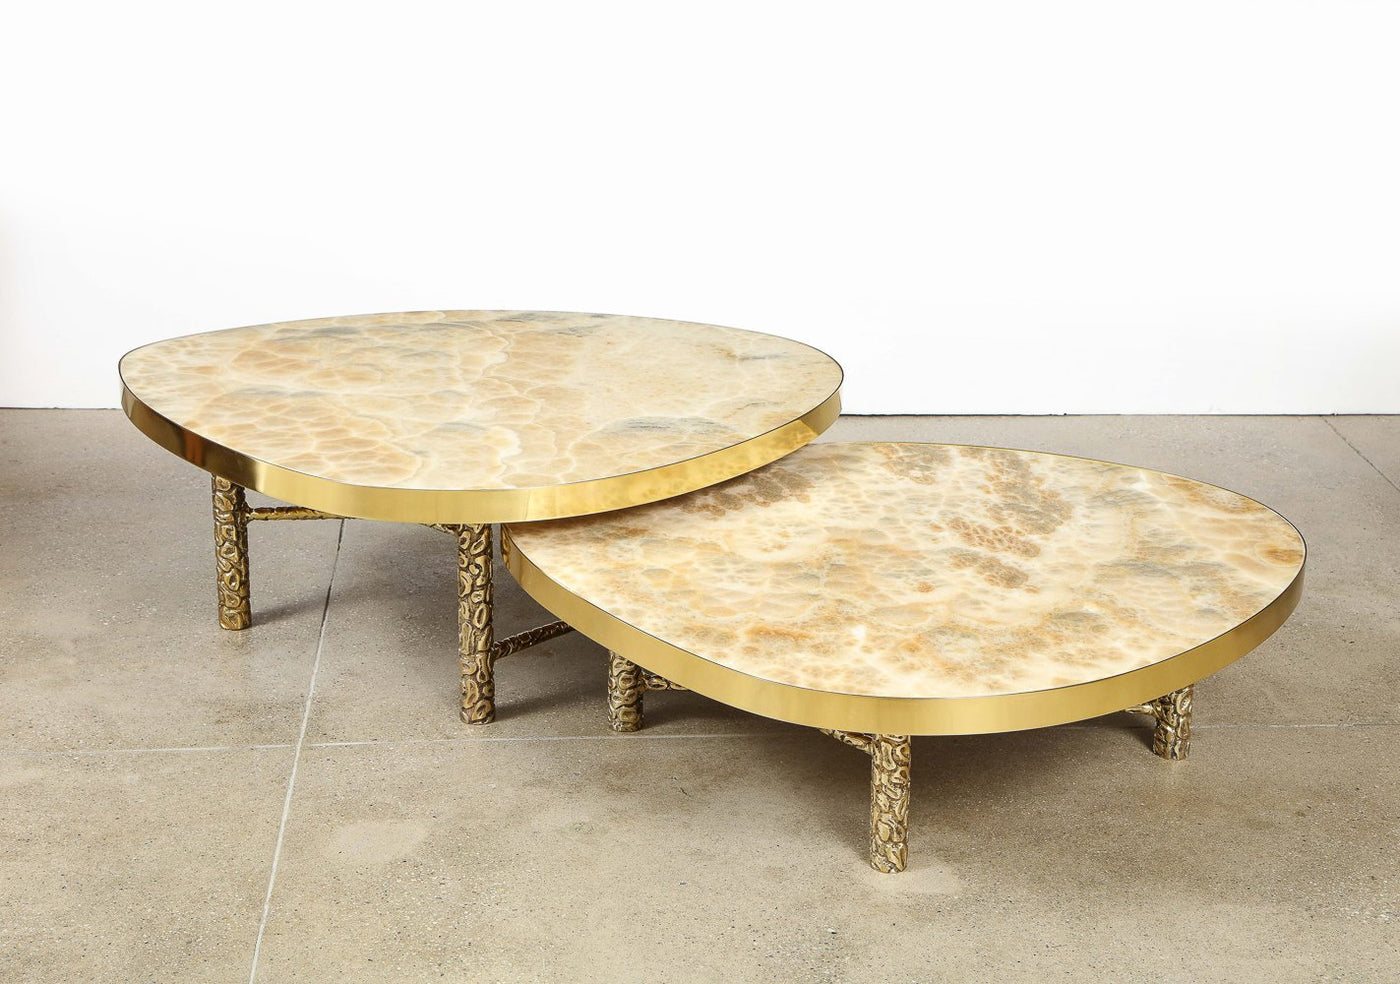 Studio-made "Meteoris" Tables by Arriau